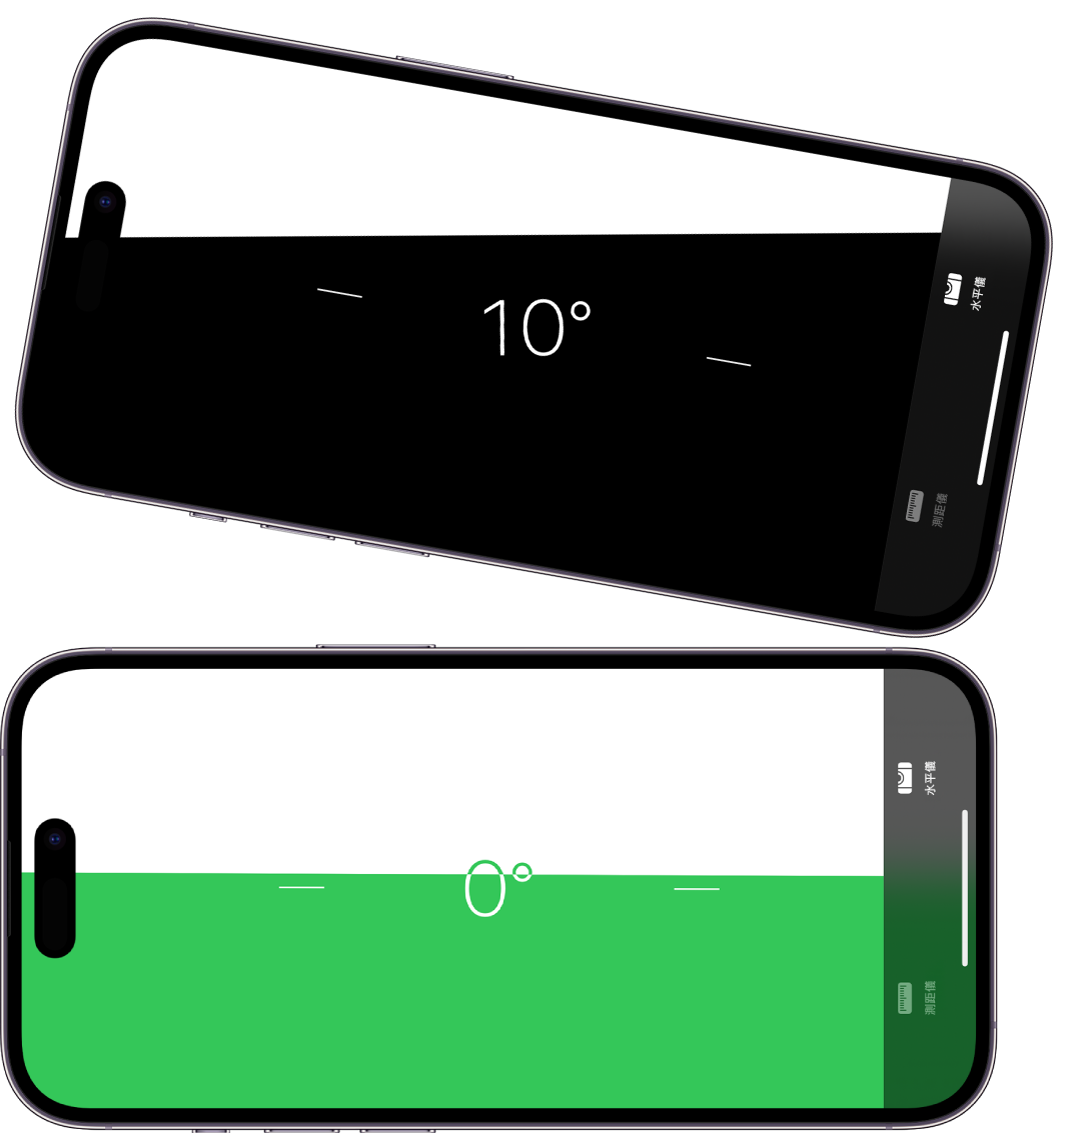 「測距儀」App 中的水平儀畫面。最上方顯示 iPhone 以 10 度傾斜，底部顯示 iPhone 為水平狀態。